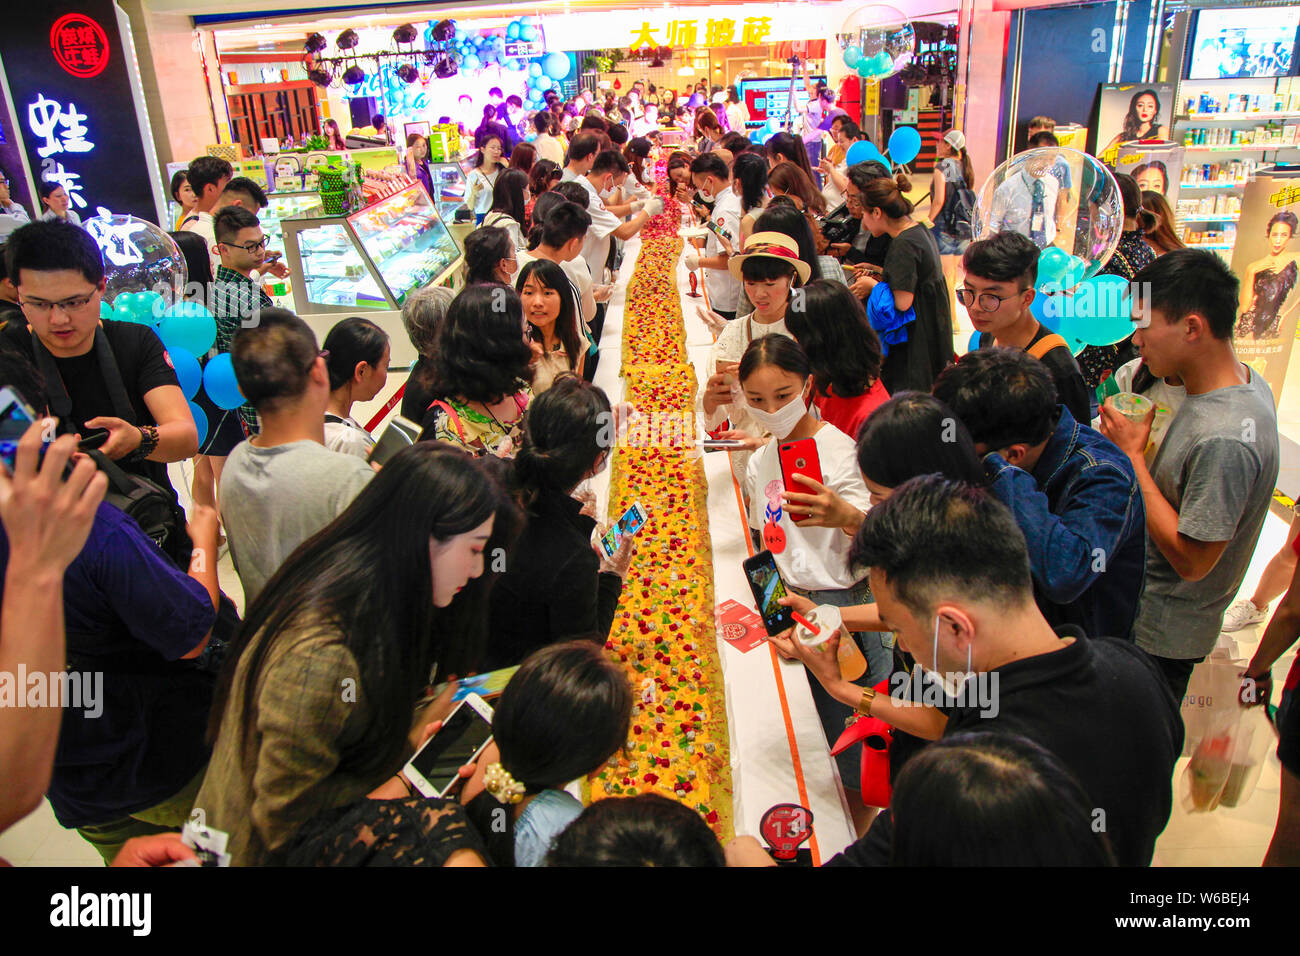 Los clientes probar la pizza más larga de China, que es de 13.14 metros de largo, en uno de los de la Internet China Días de San Valentín en un centro comercial en Kunming Foto de stock